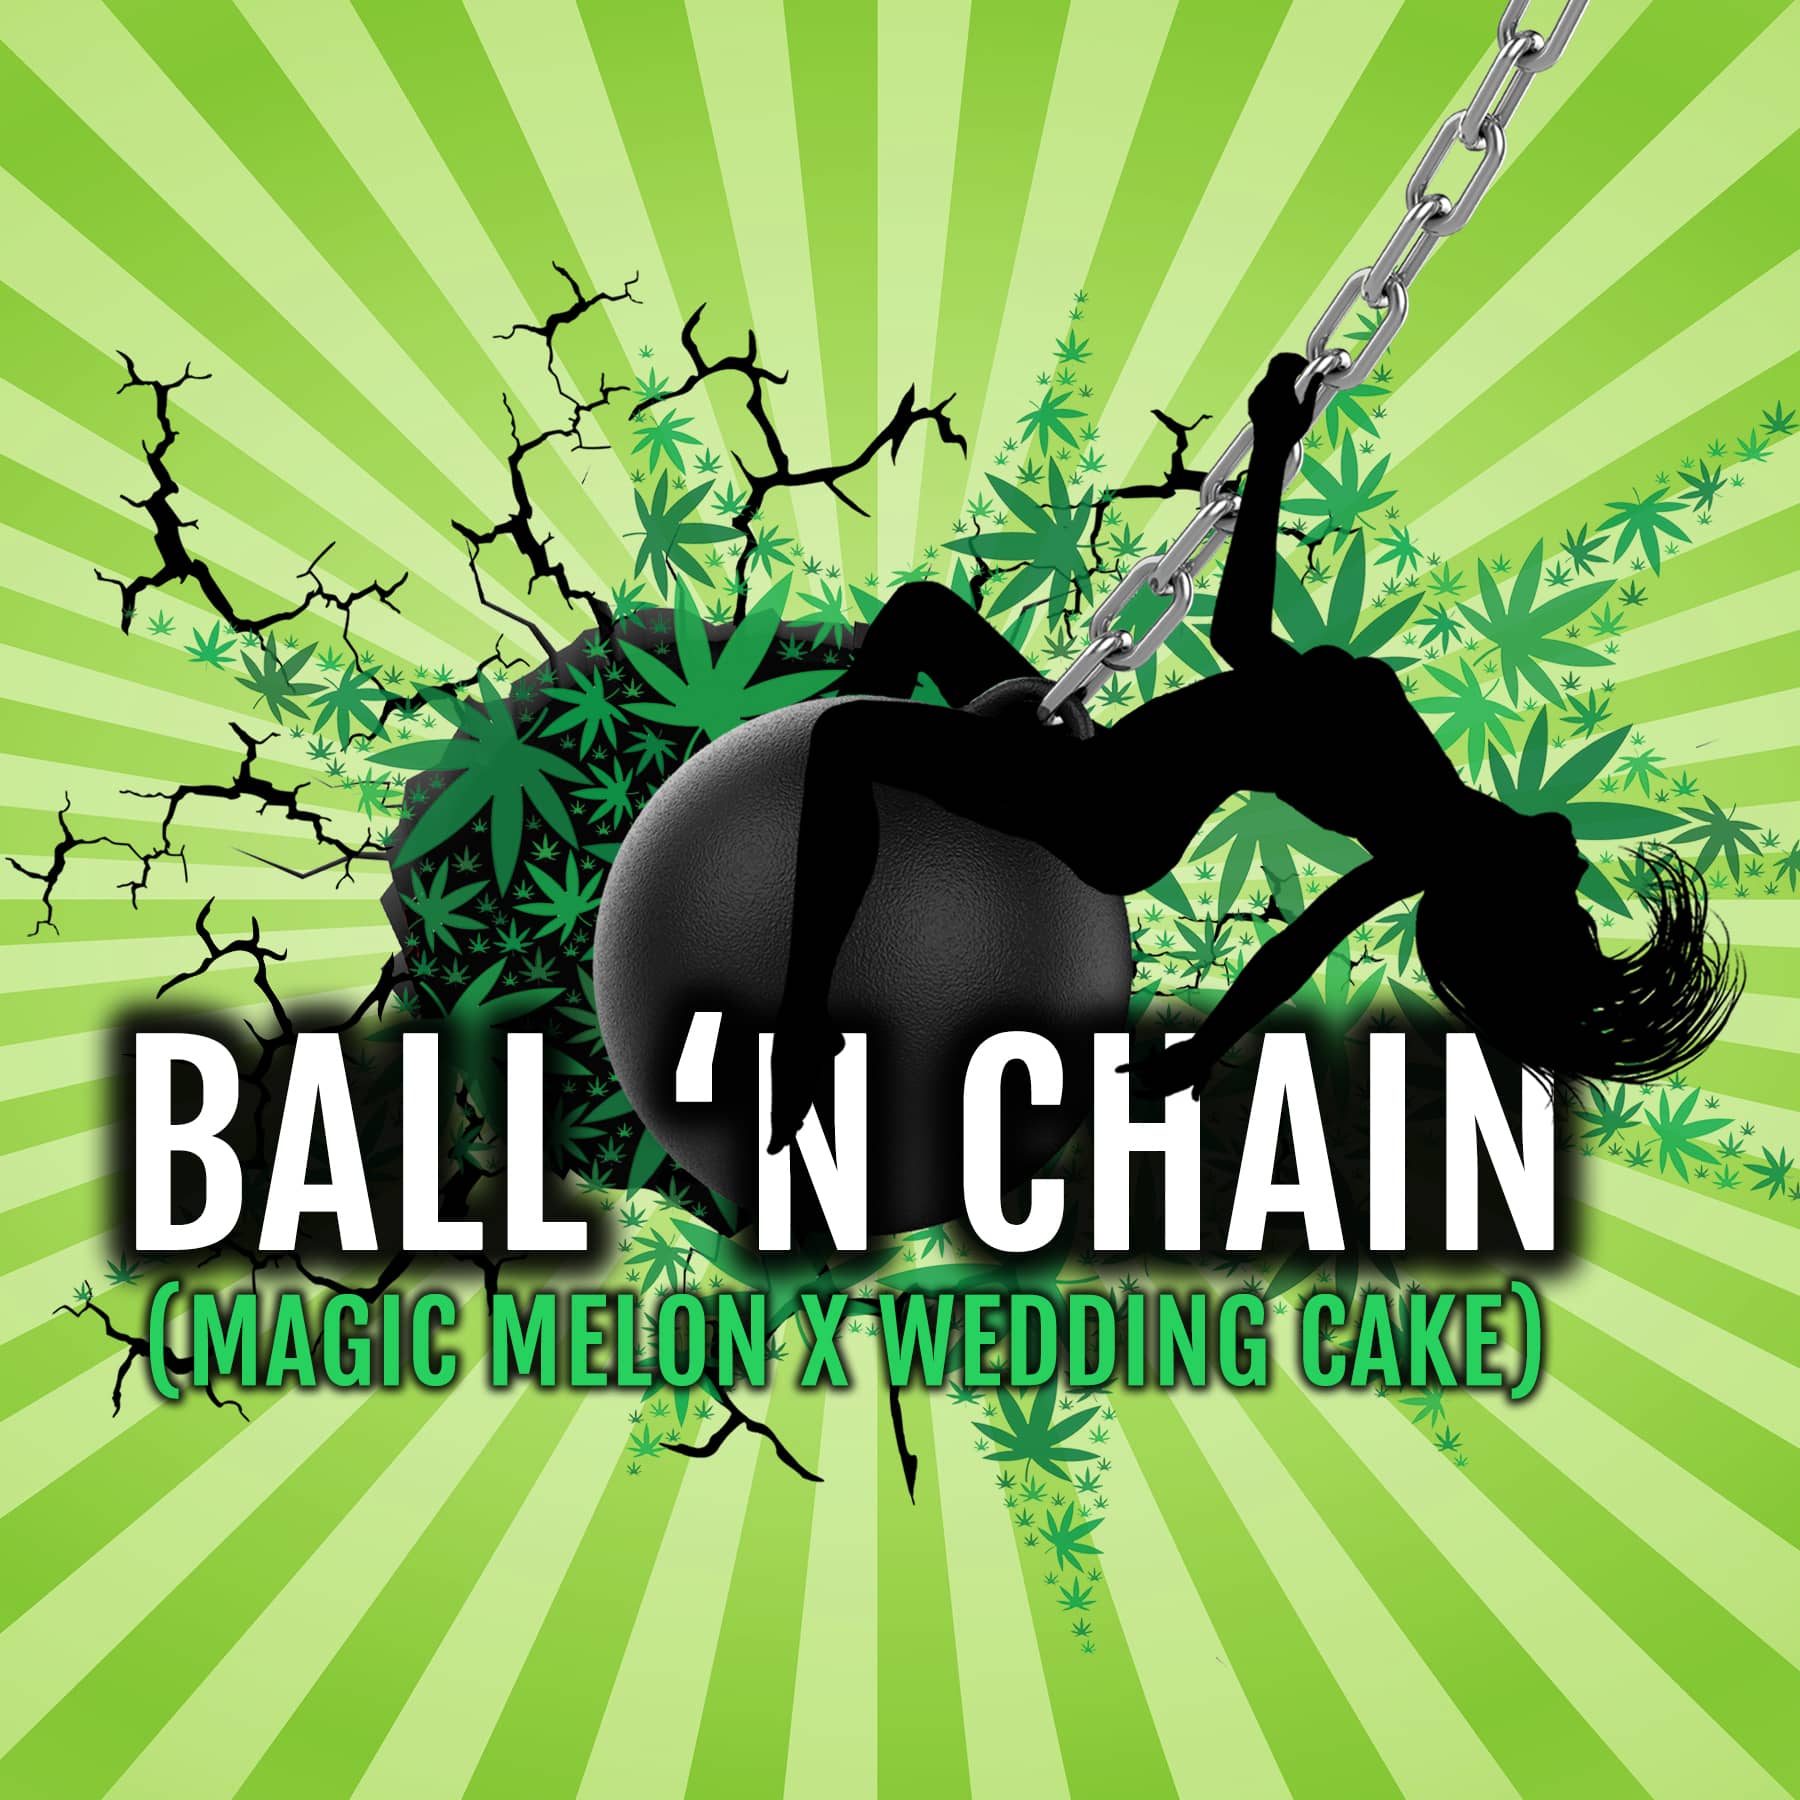 Ball 'n Chain